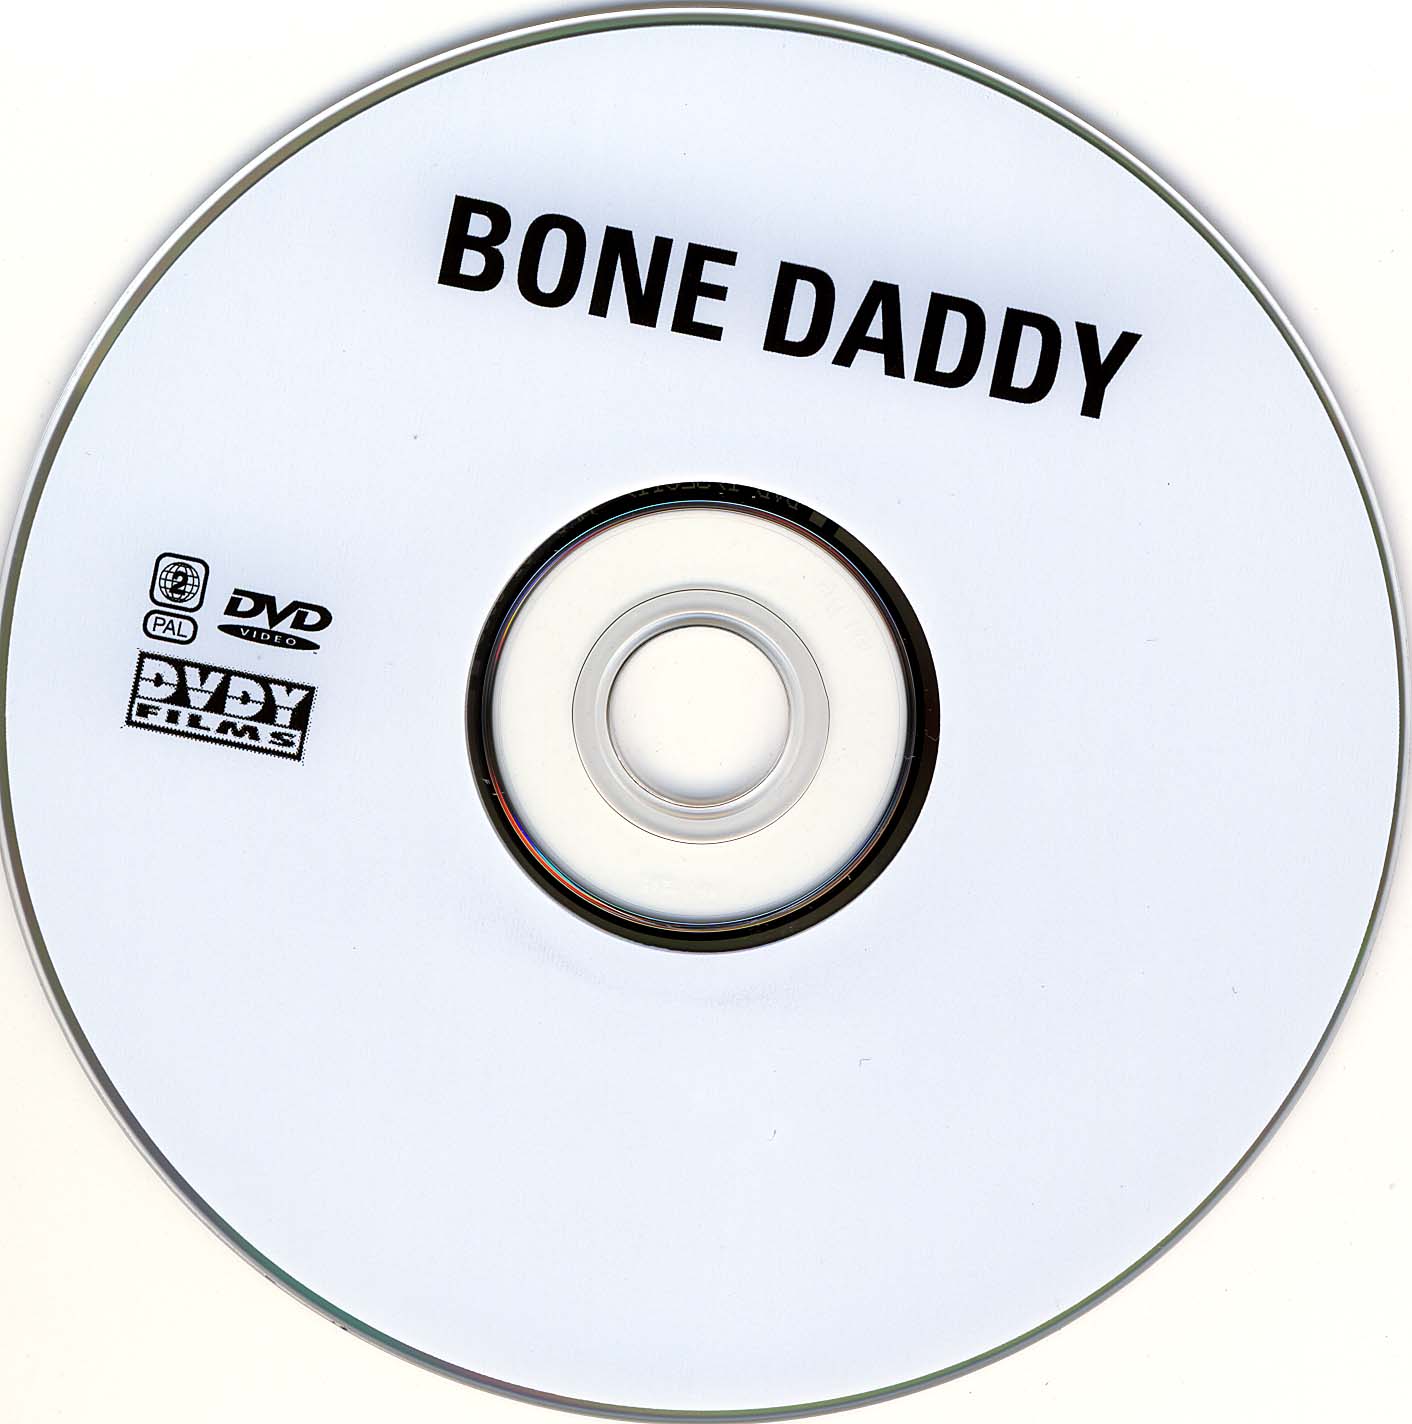 Bone daddy